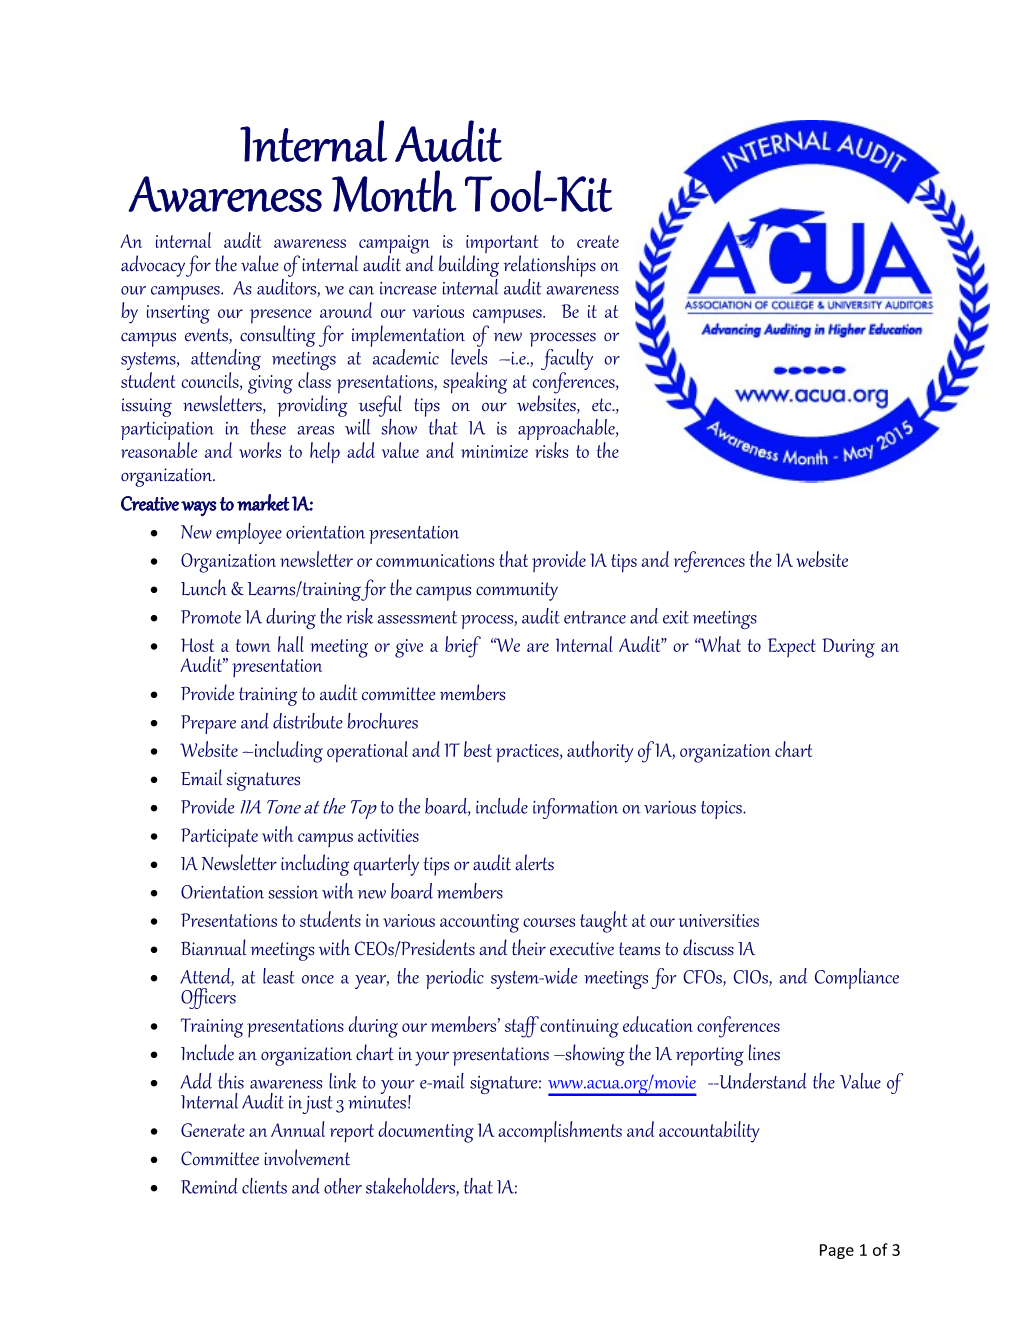 Awareness Month Tool-Kit